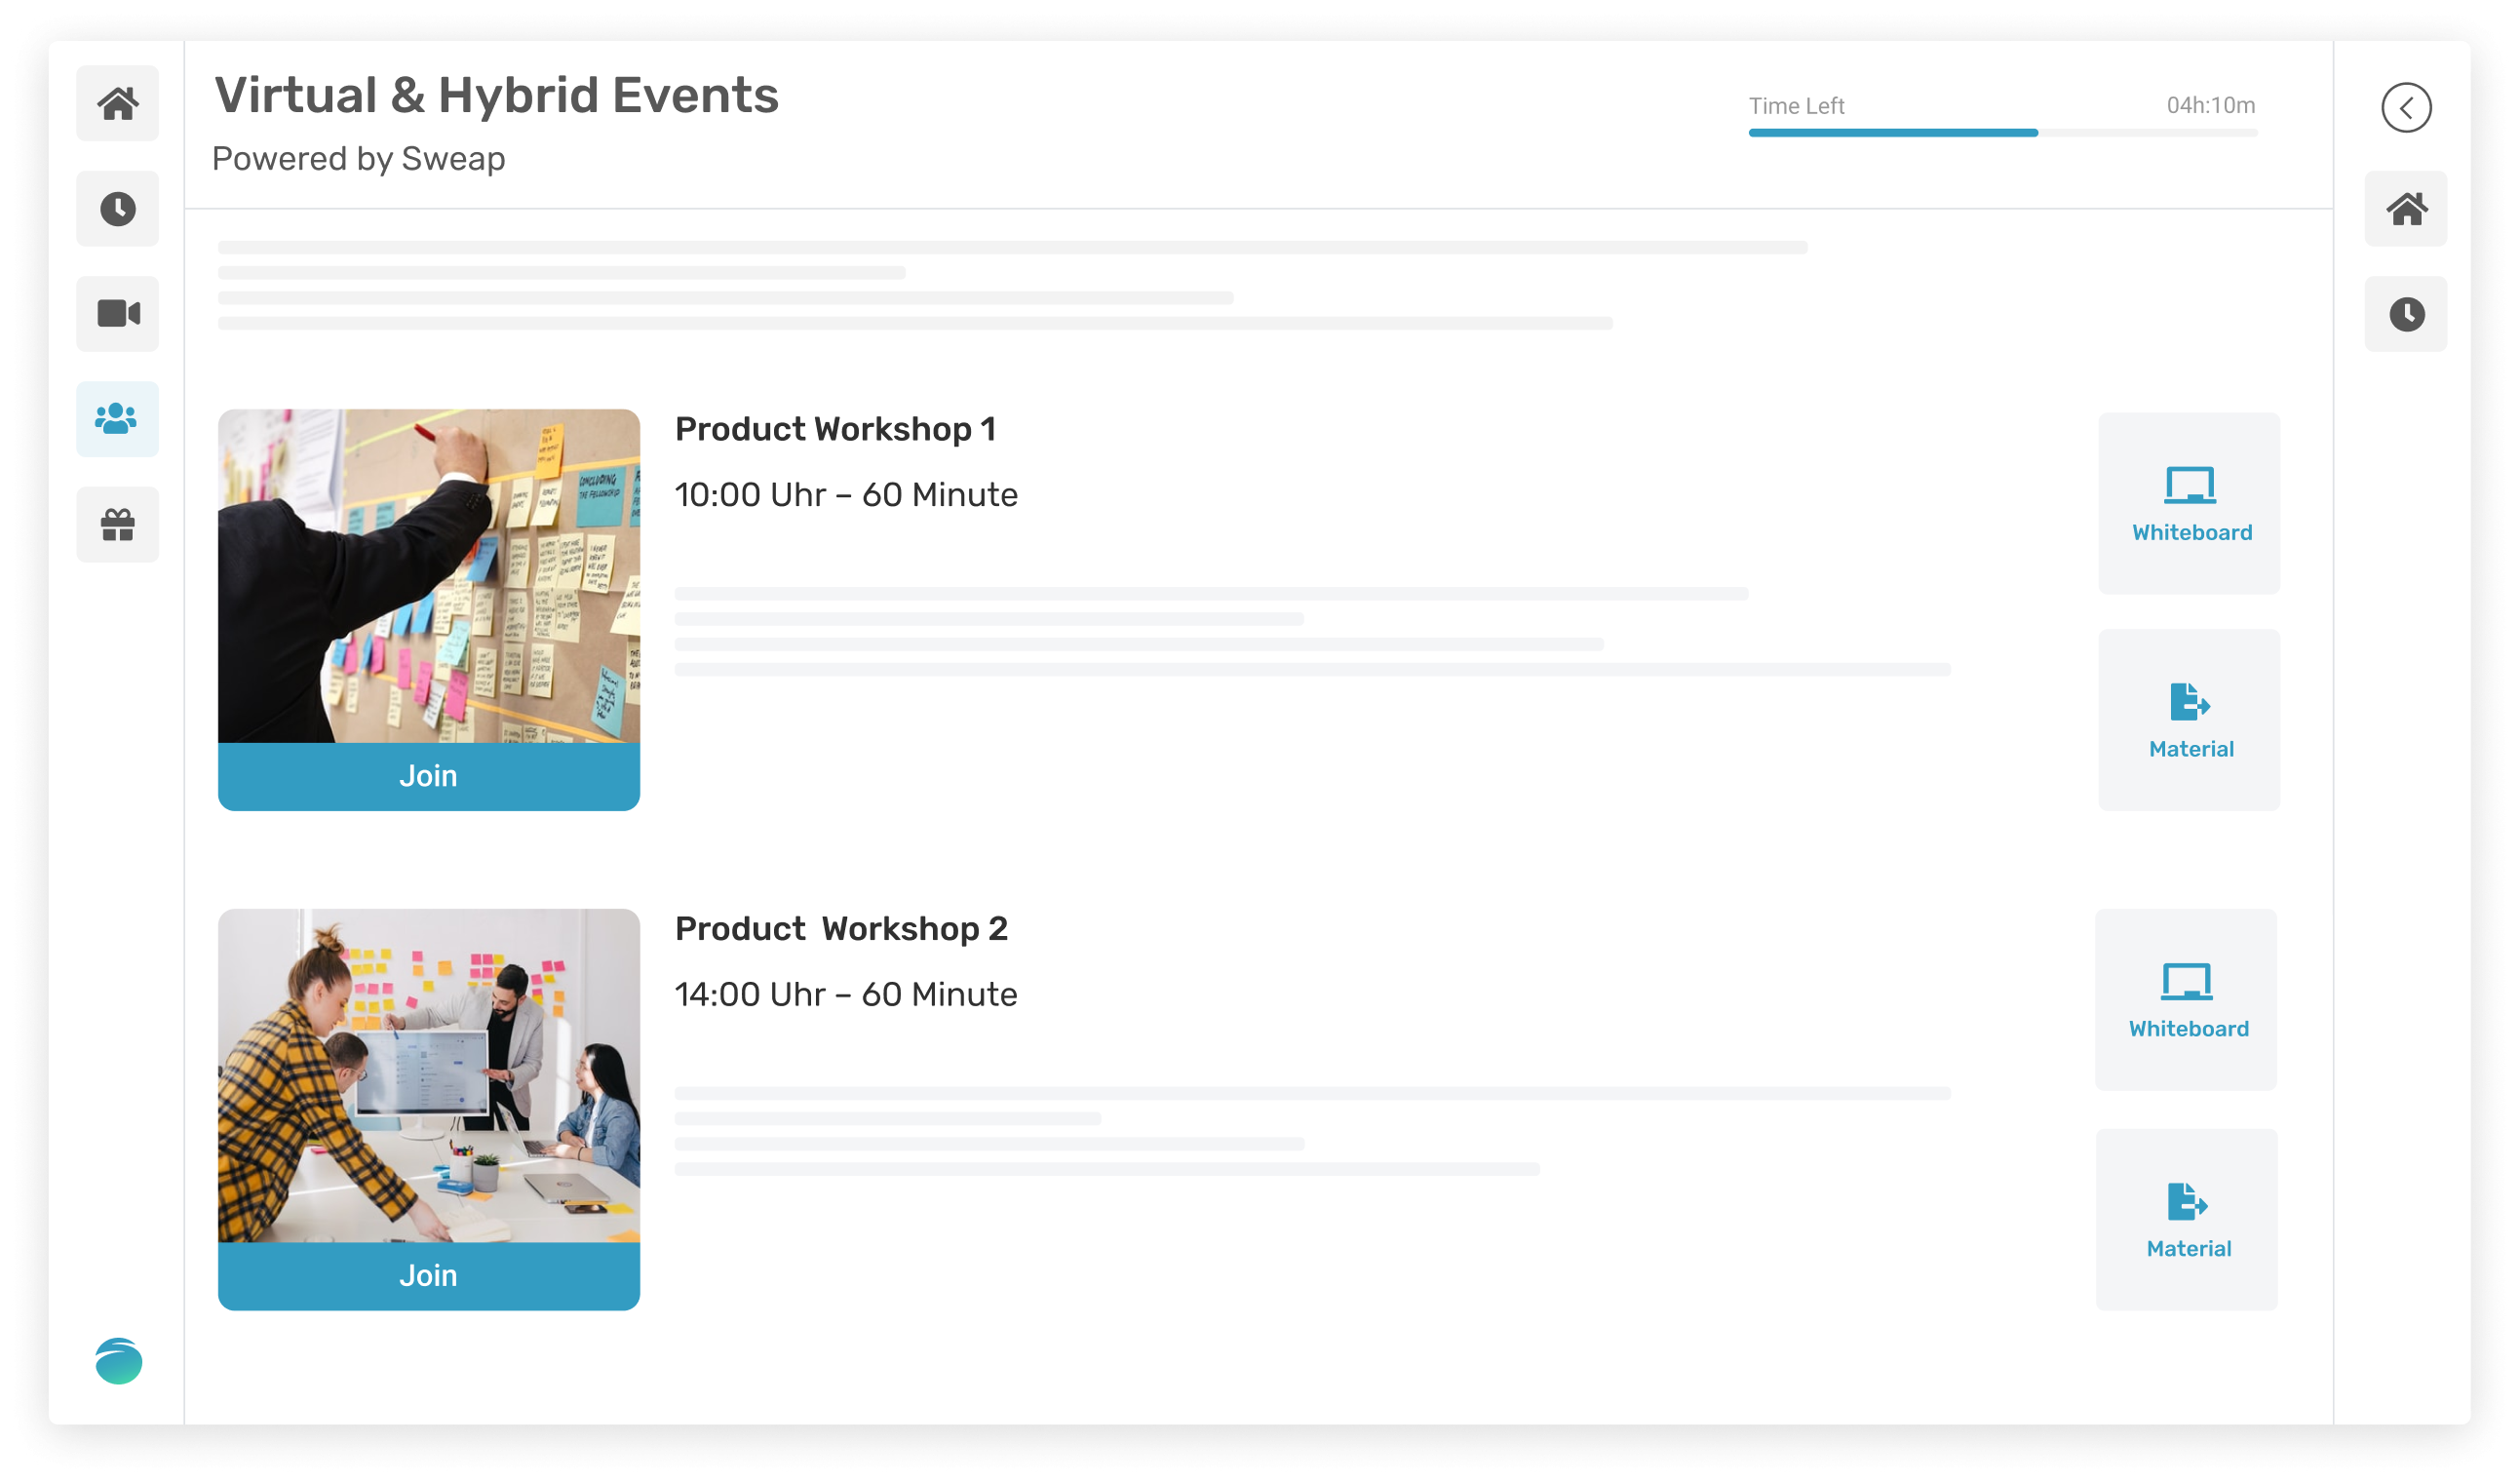 virtual event platform schedule